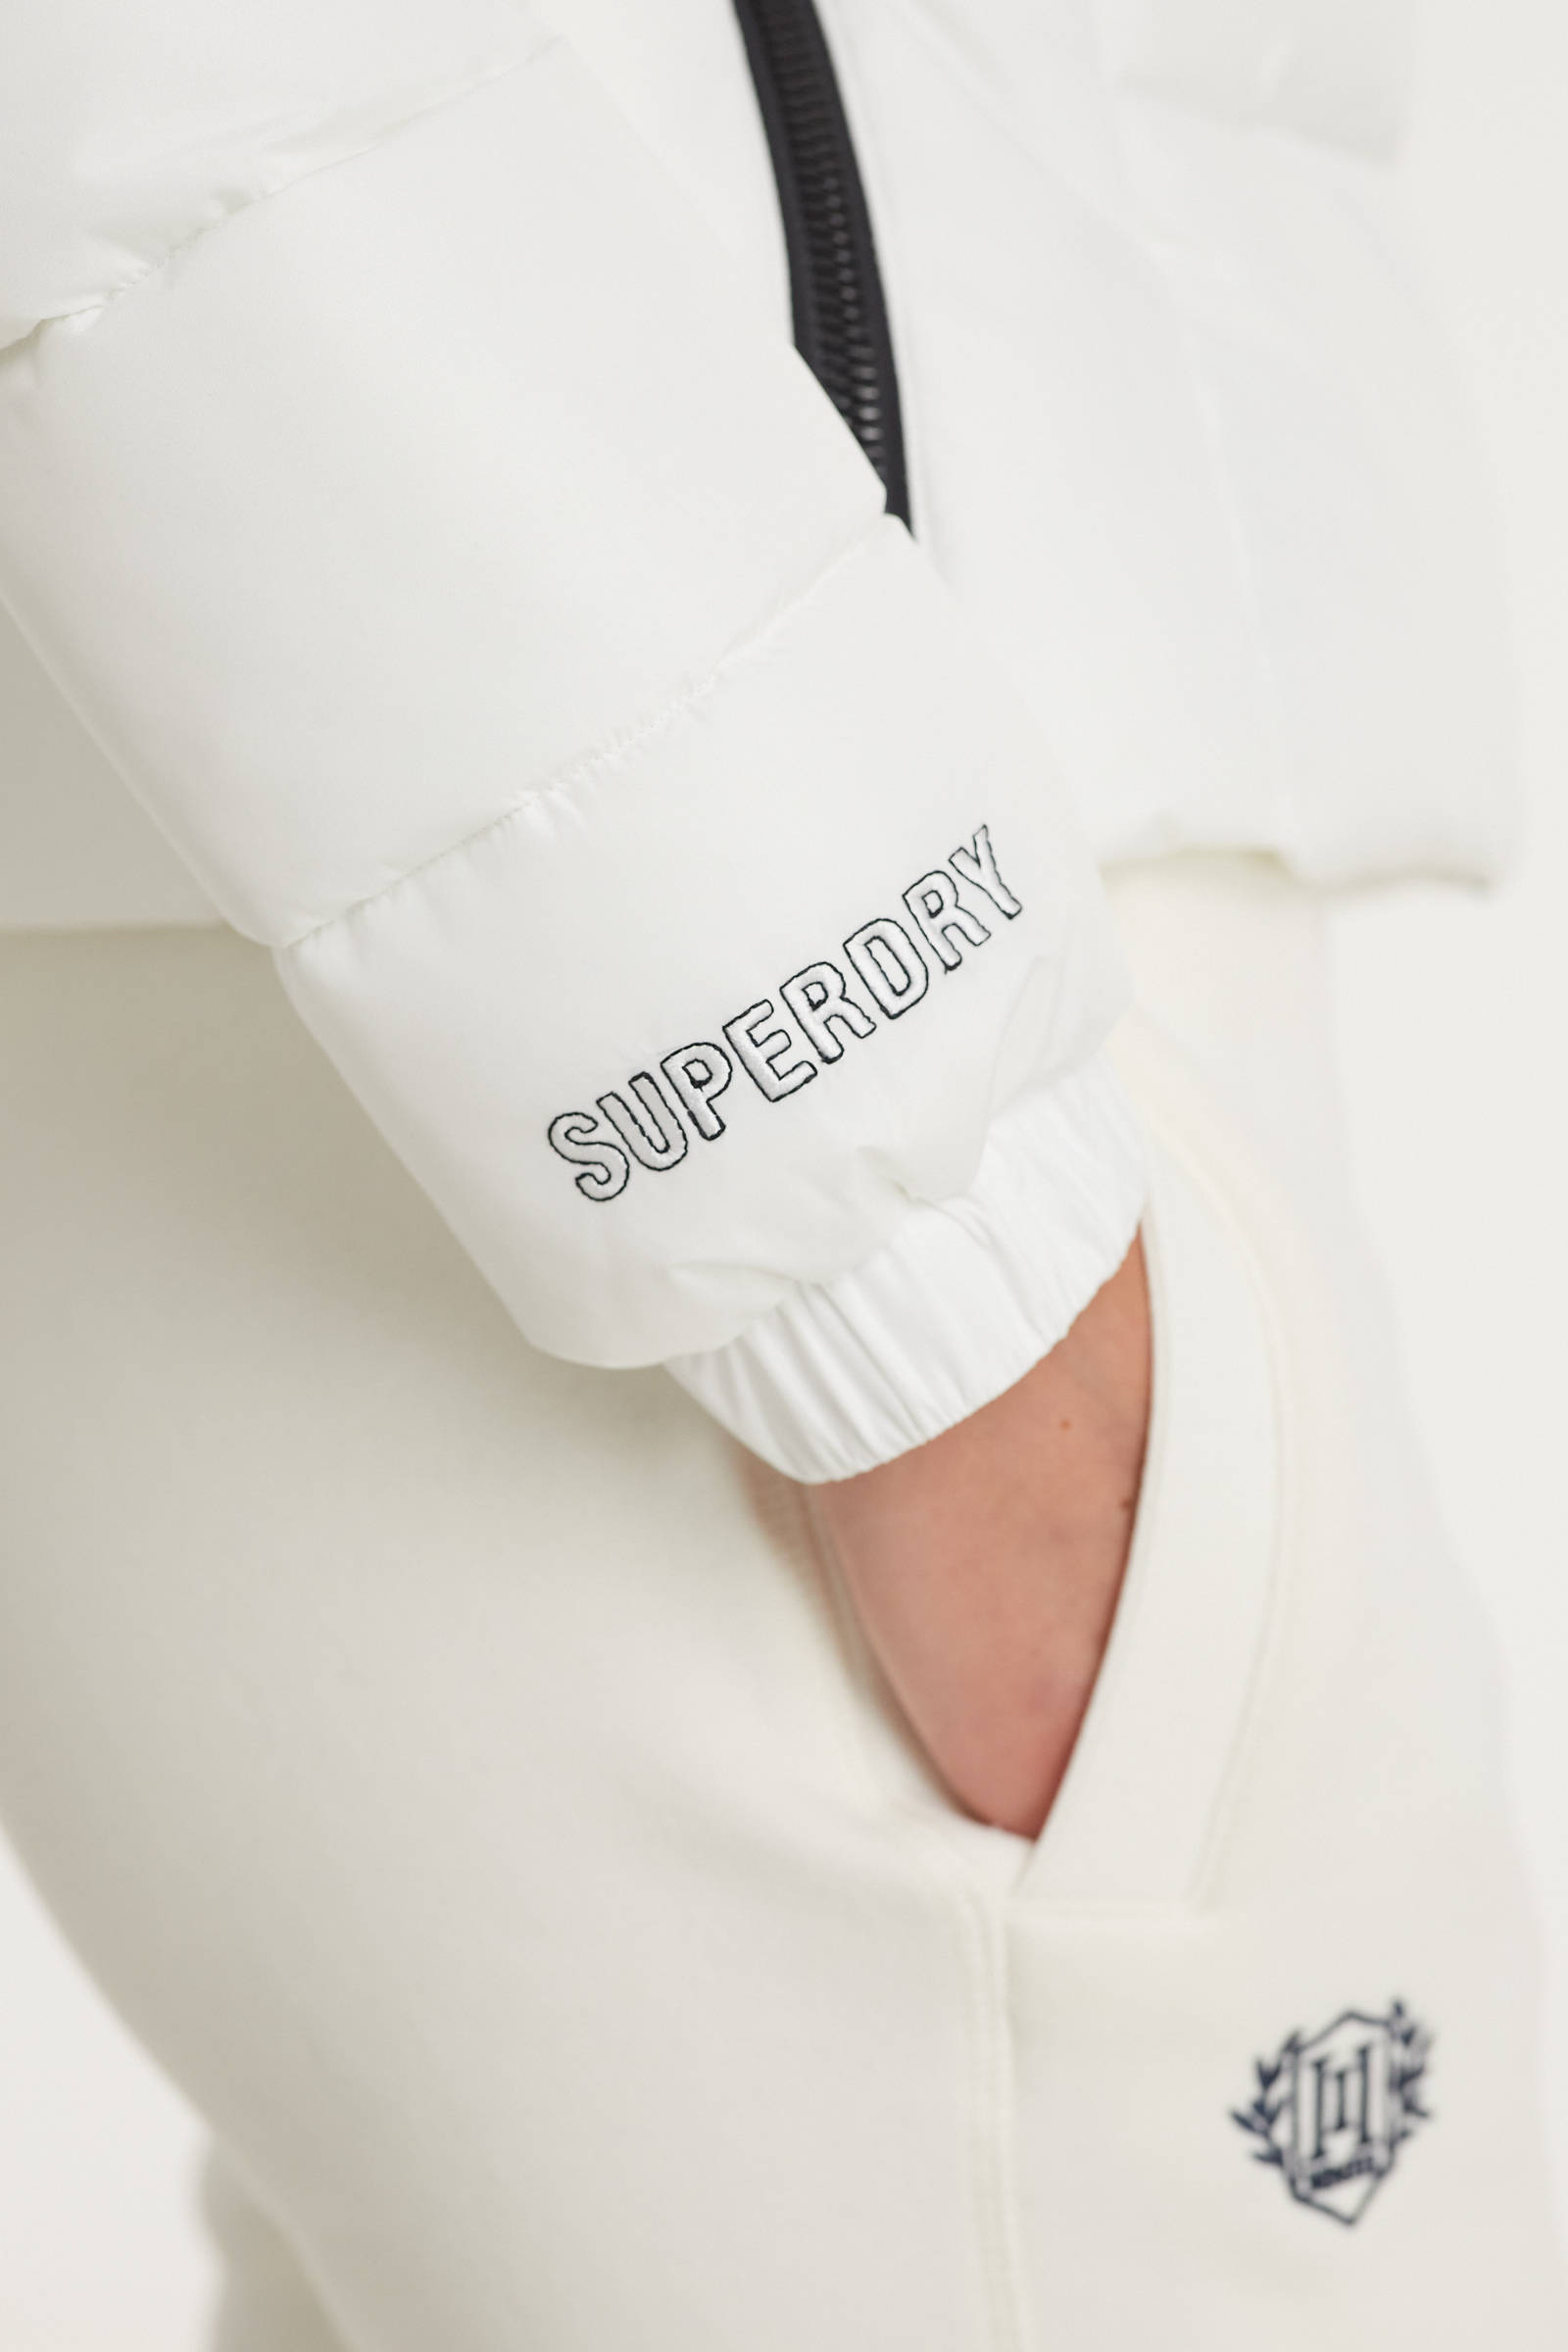 Superdry gewatteerde jas wit